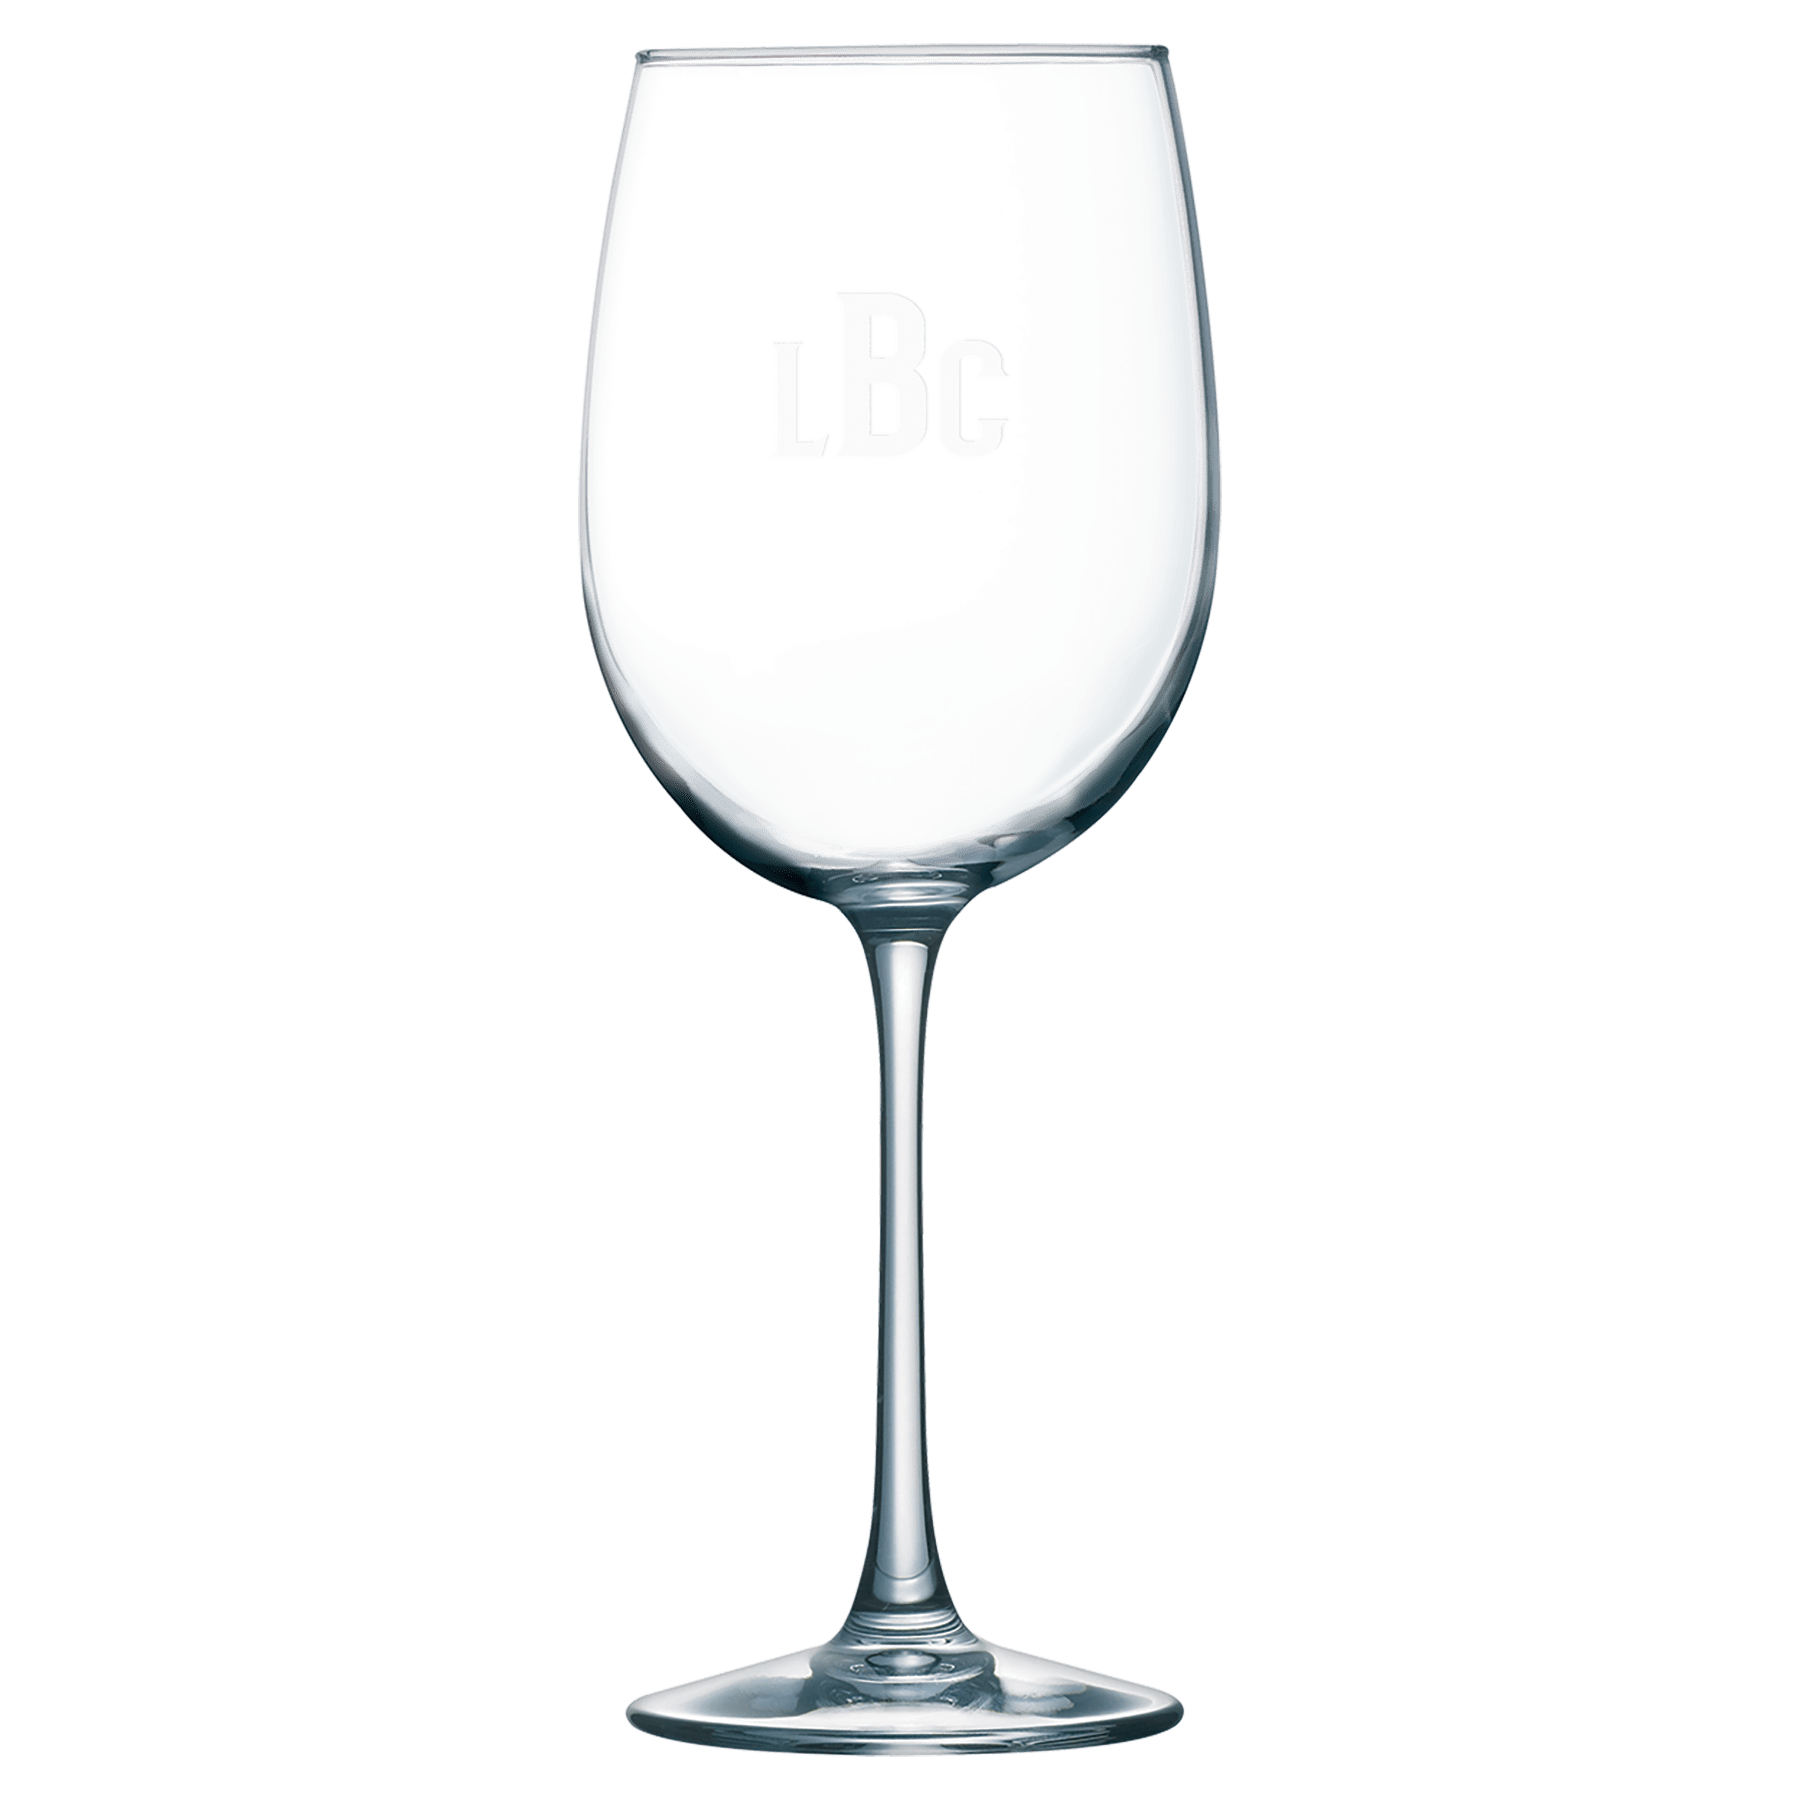 19 oz. Wine Glass